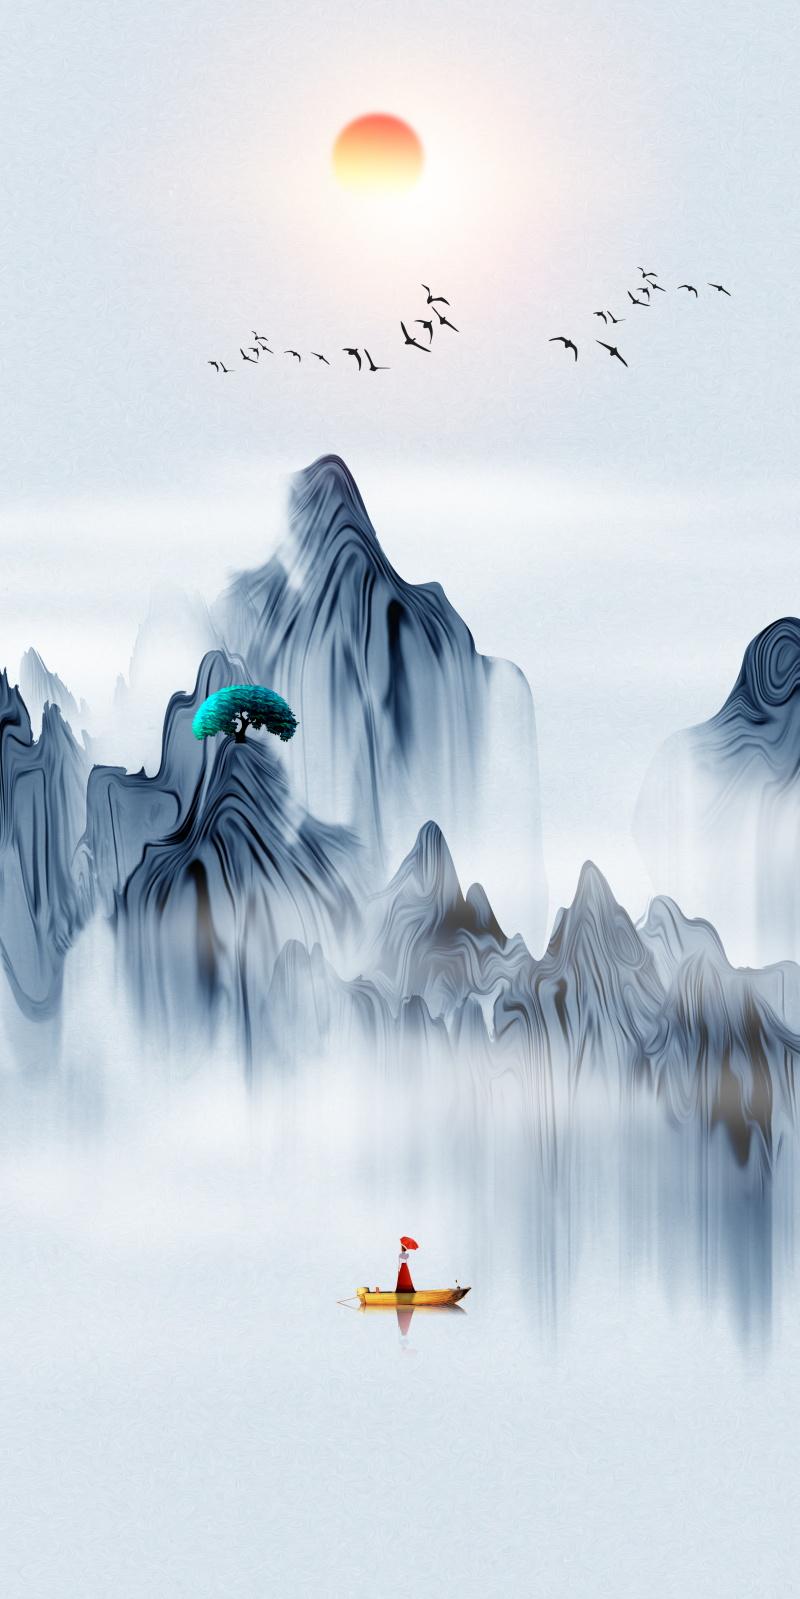 中国风水墨古典山水画素材分享,可做手机屏保,古风插画背景素材